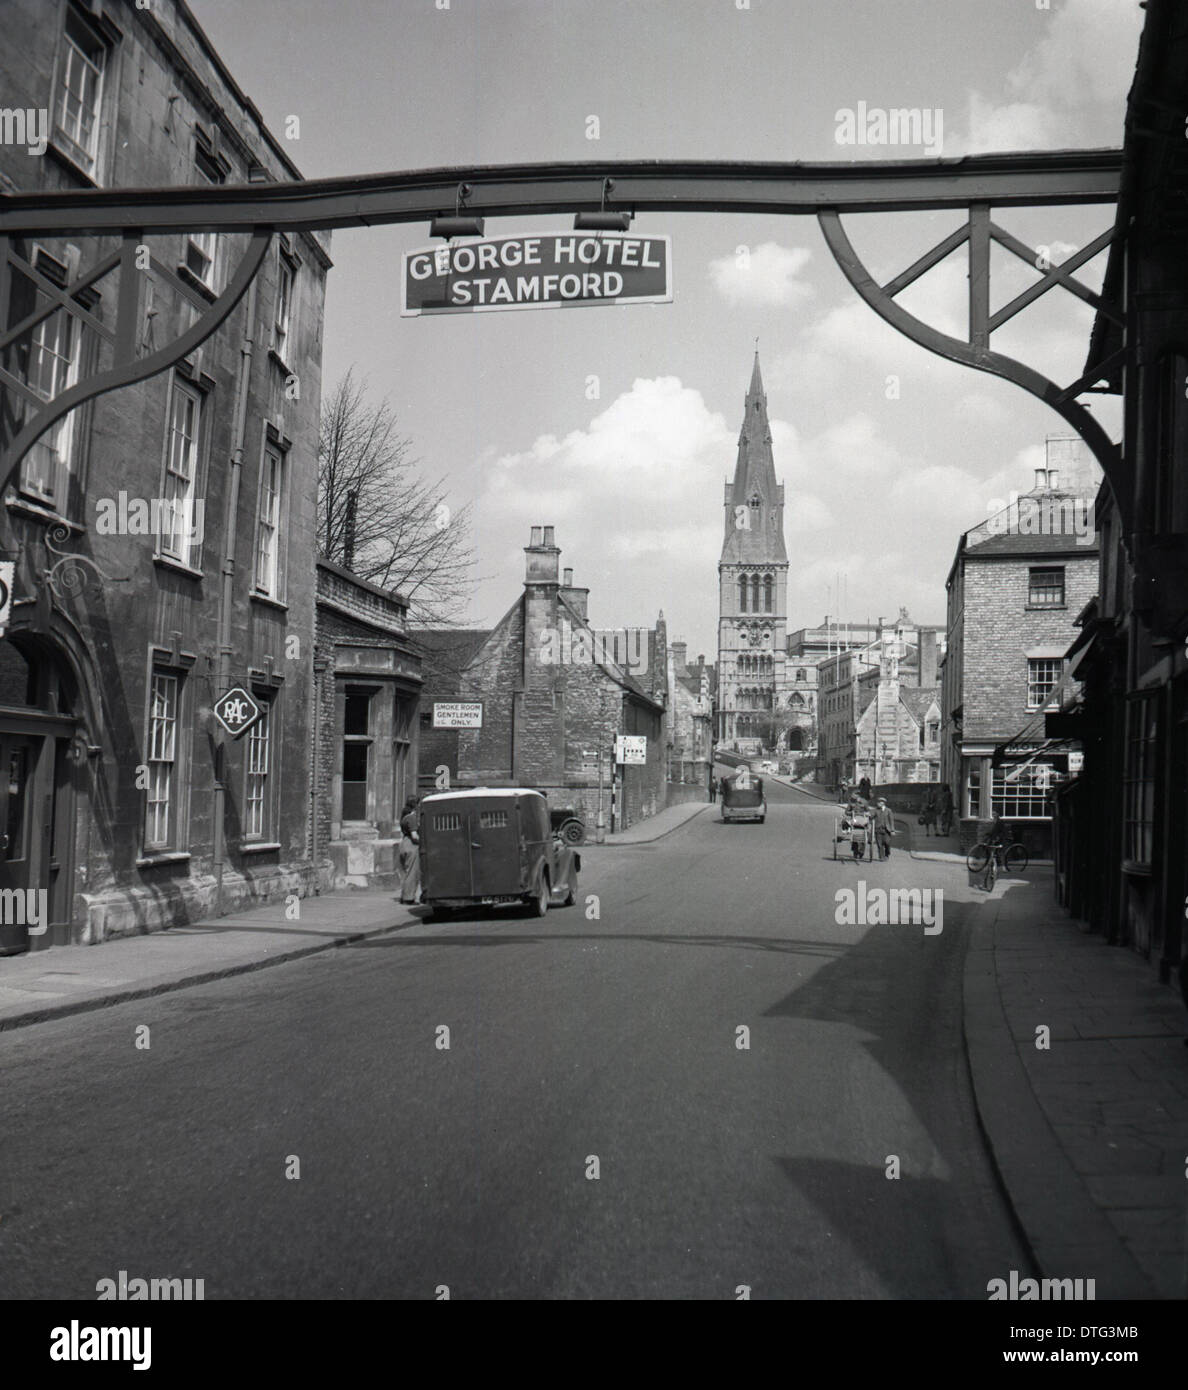 Années 1950 et un tableau historique montrant un quartier high street et un signe pour le George Hotel, Stamford, Lincolnshire. Banque D'Images